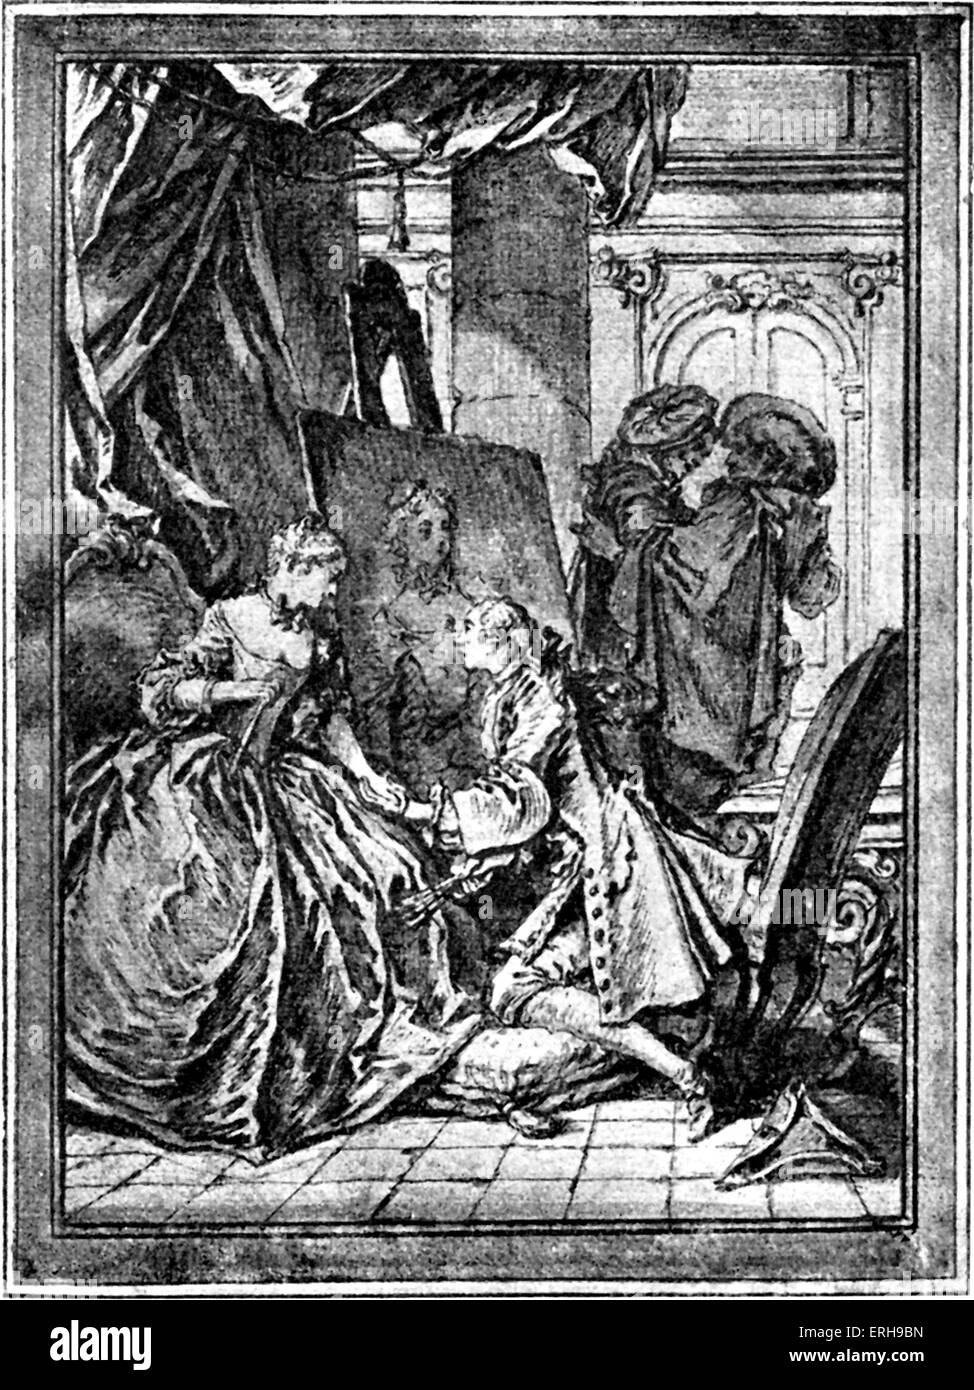 Œuvres de Molière - illus tration par Boucher, édition 1734. Publié dans Paris, France. Dans le style classique. M : Également connu sous le nom de Banque D'Images